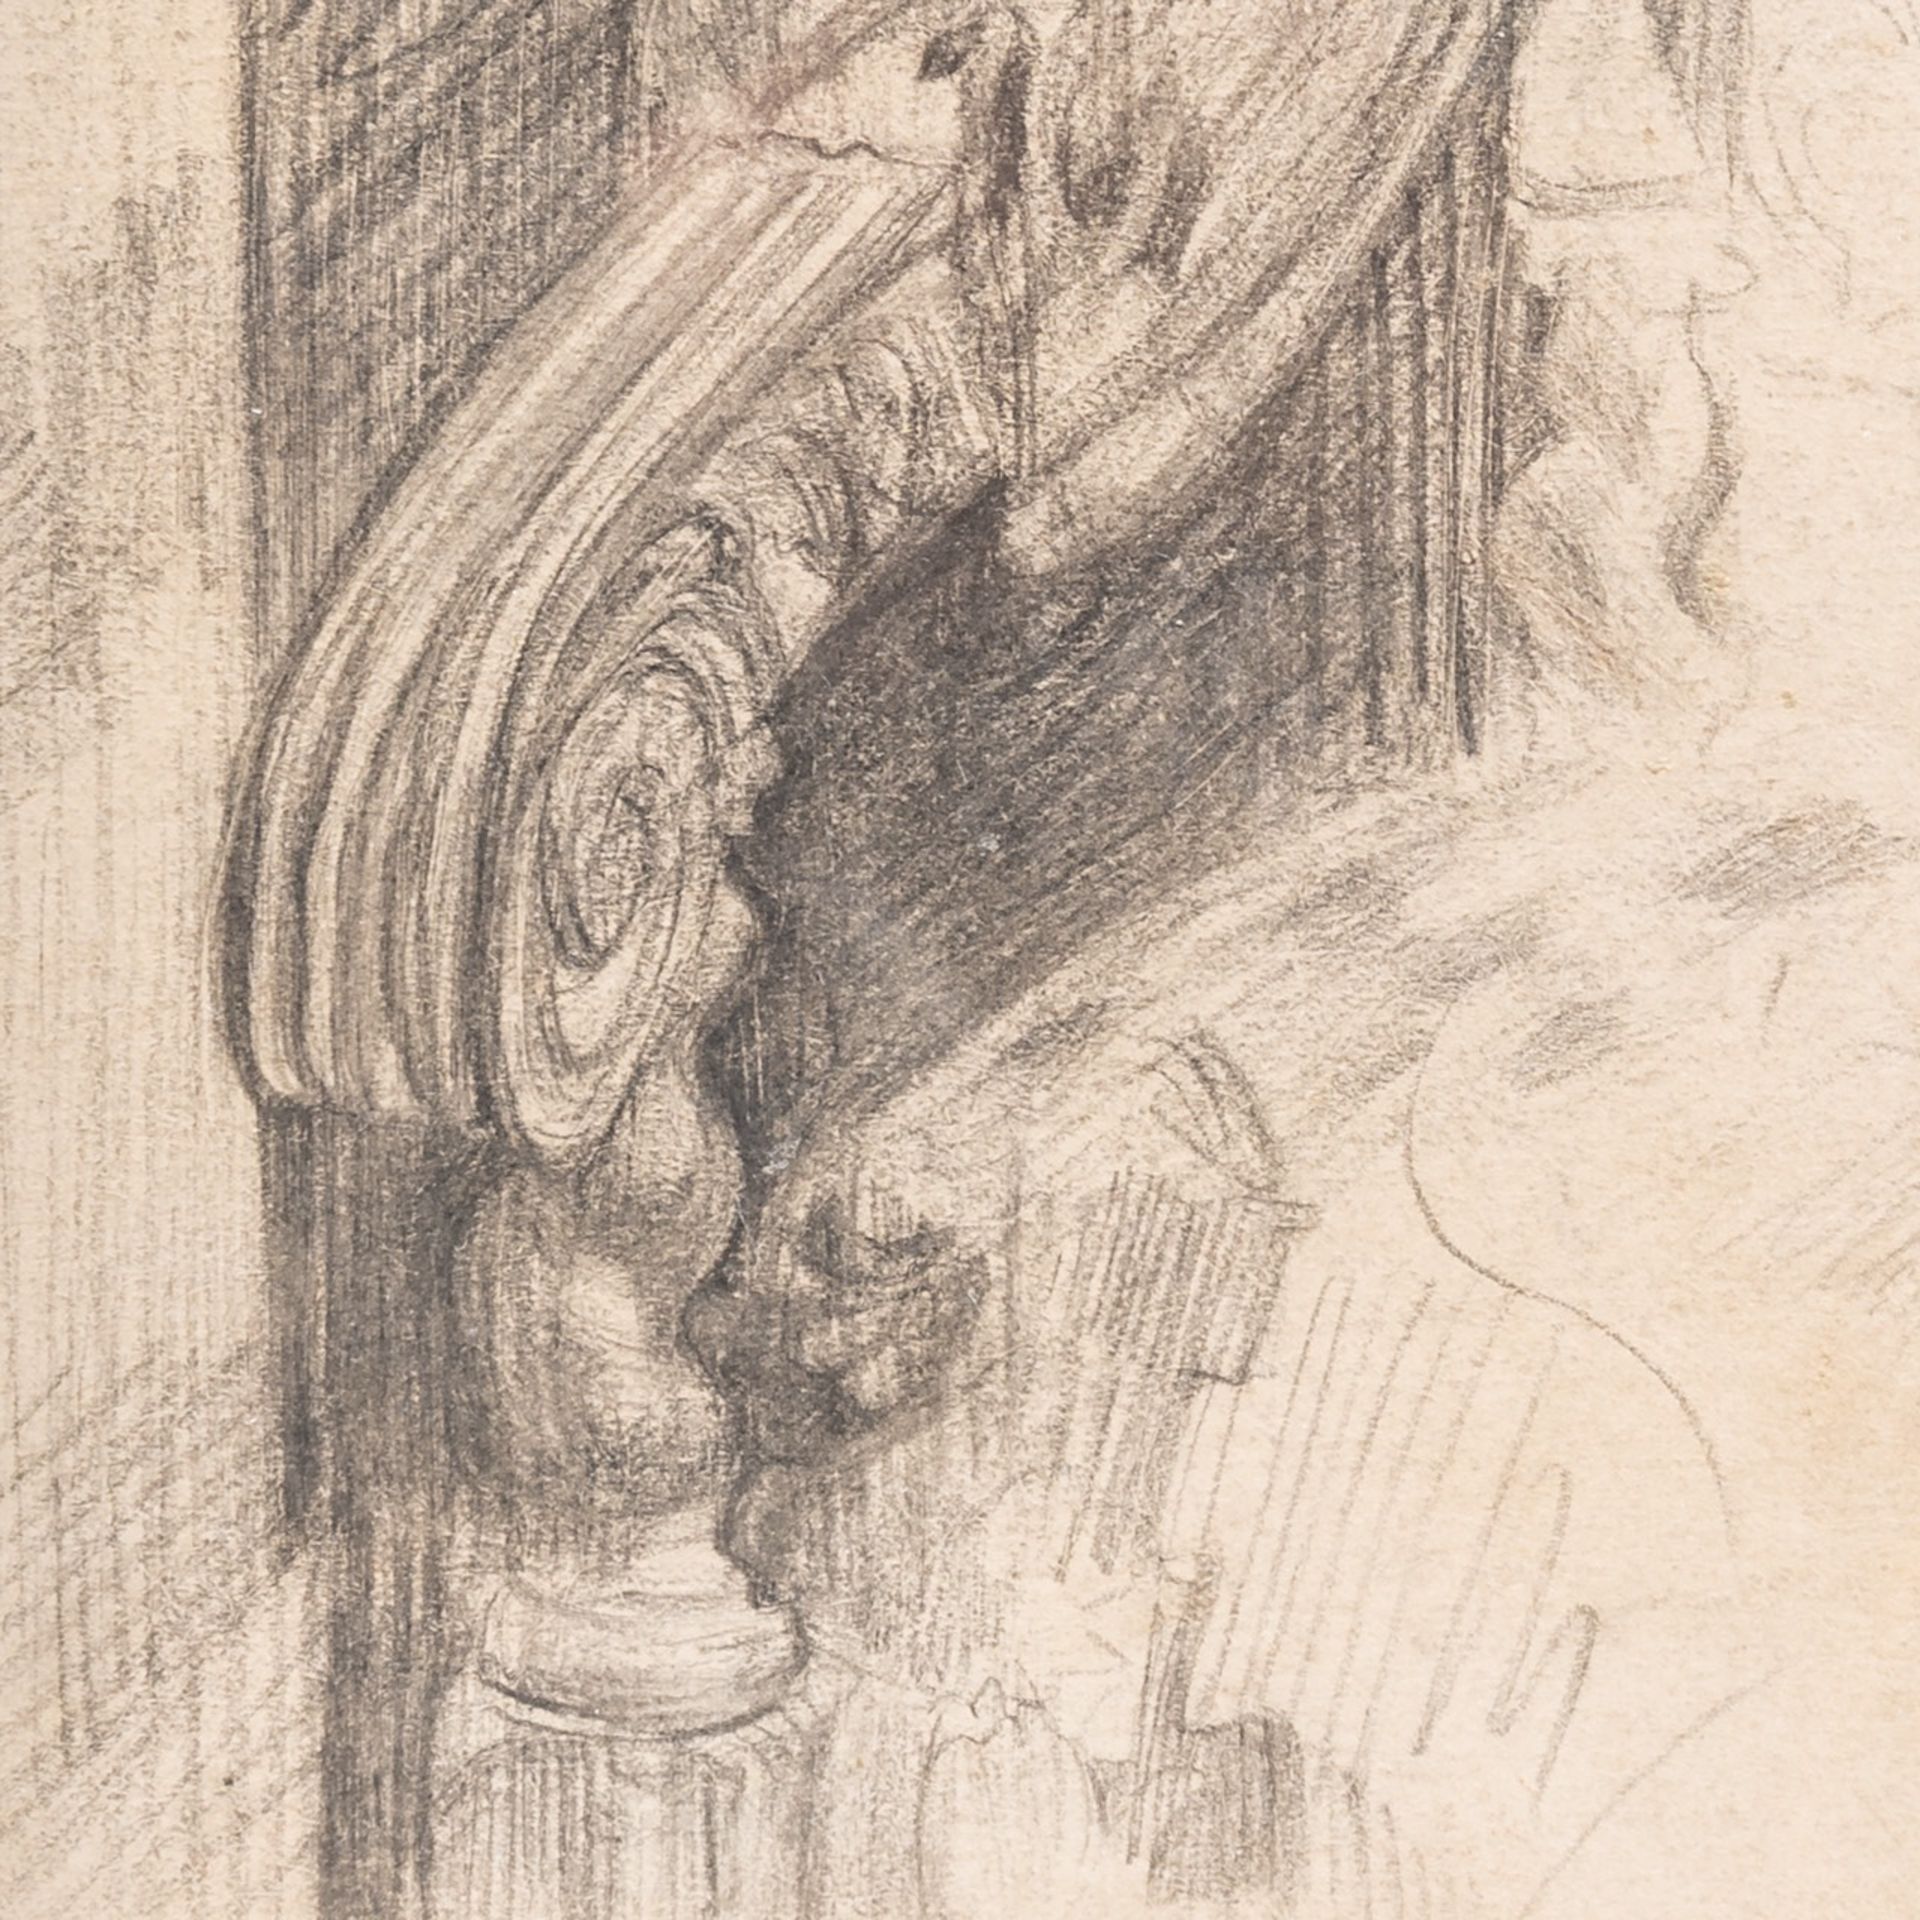 James Ensor (1860-1949), 'Un bras du fauteuil du bureau', 1889, pencil drawing 22 x 17 cm. (8.6 x 6. - Bild 5 aus 5